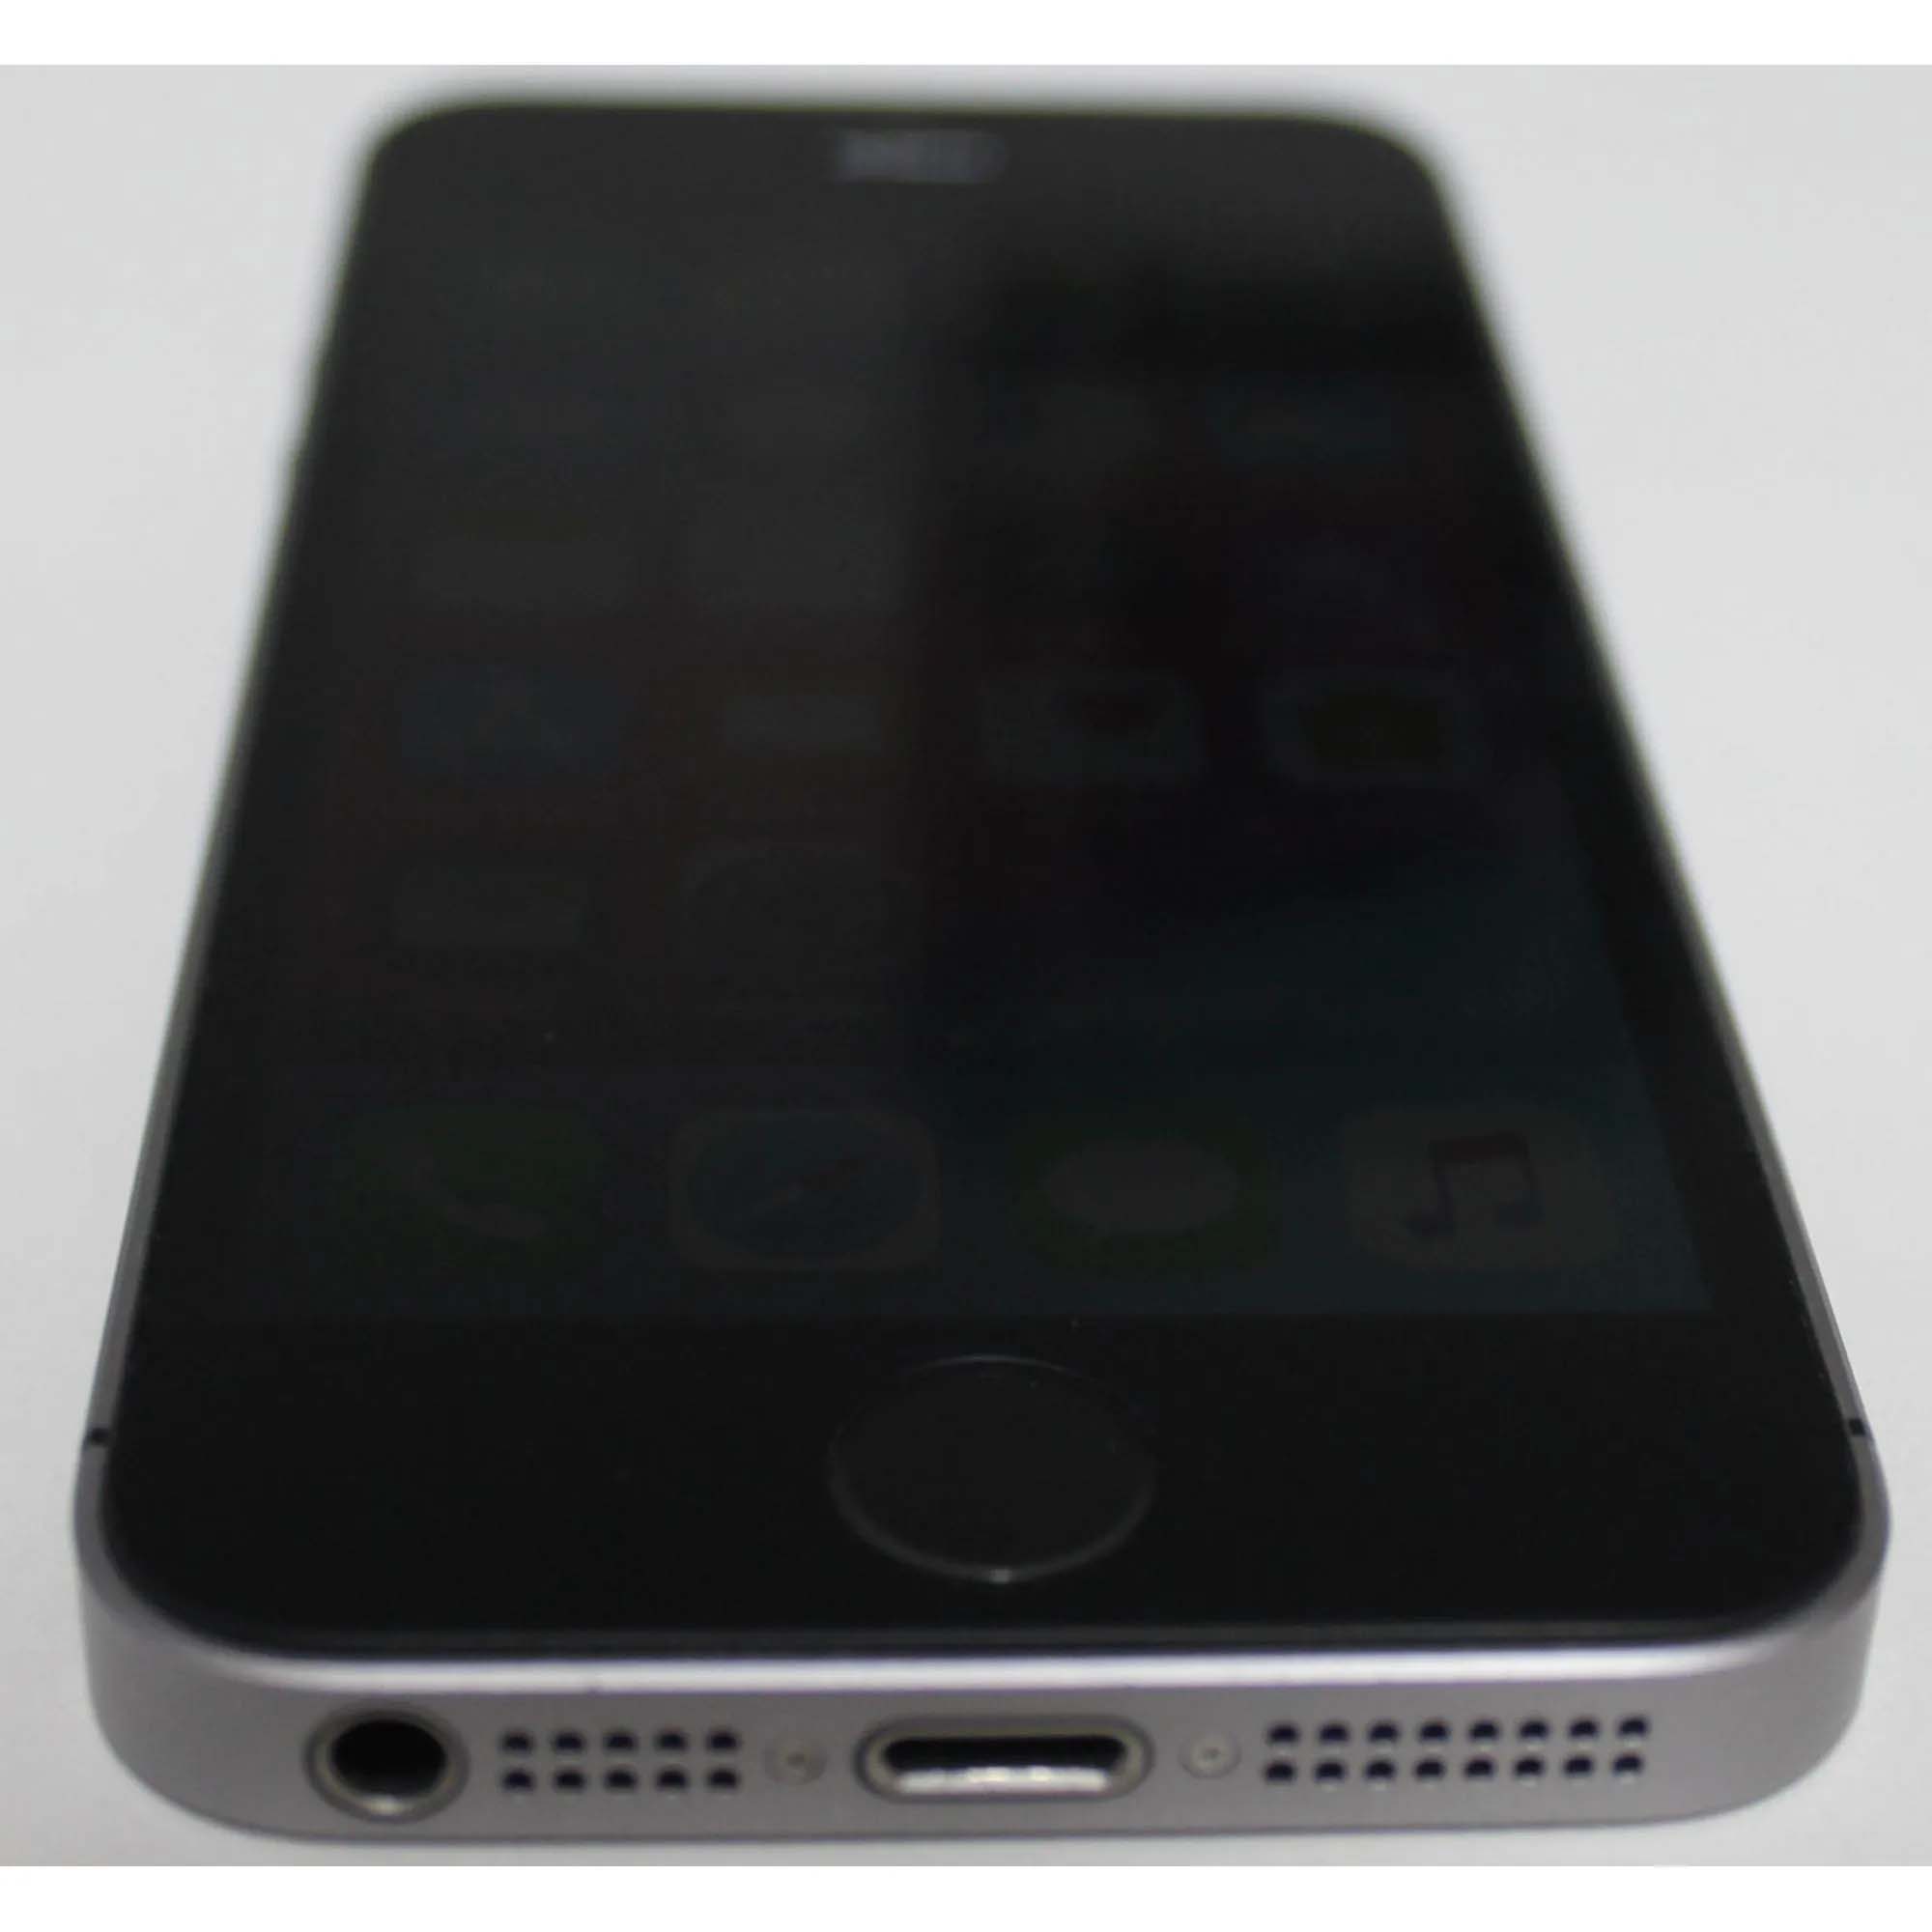 iPhone SE MP822BR/A 4" 32GB - Cinza espacial